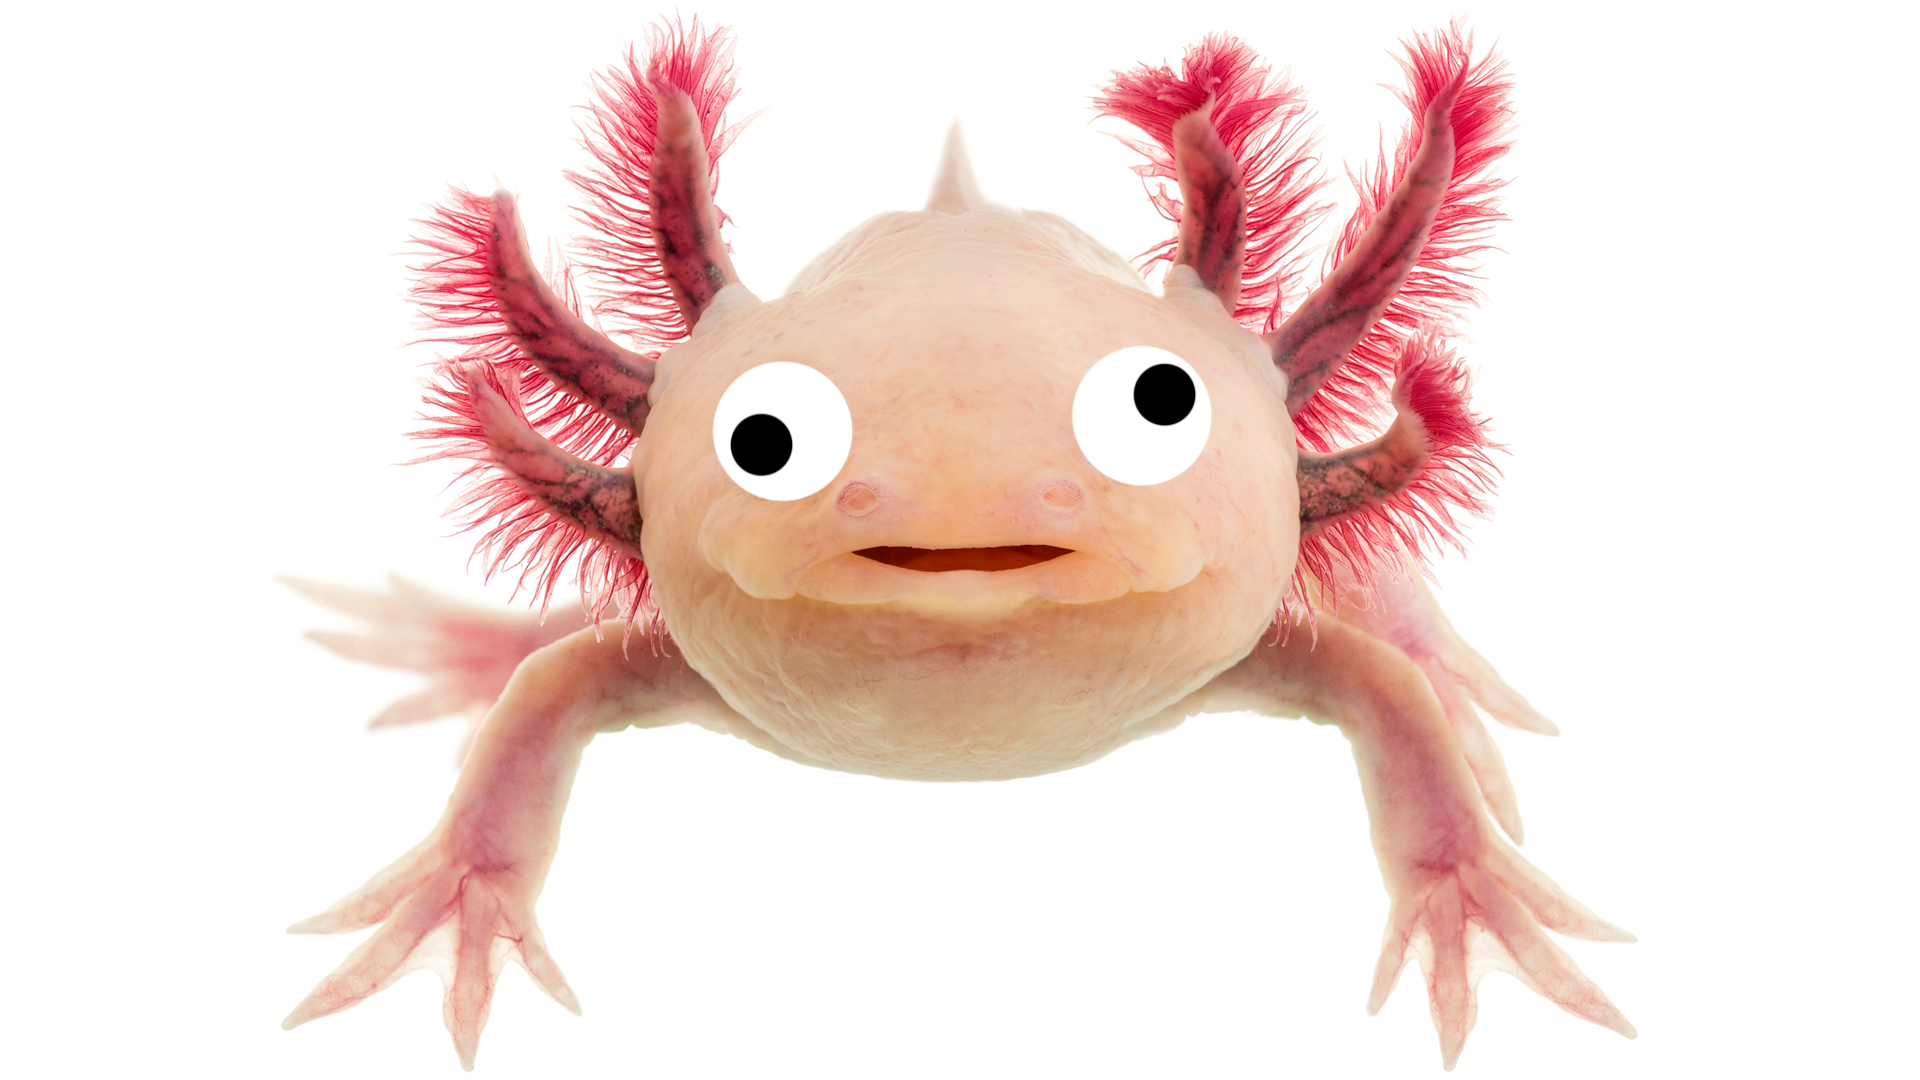 A happy axolotl